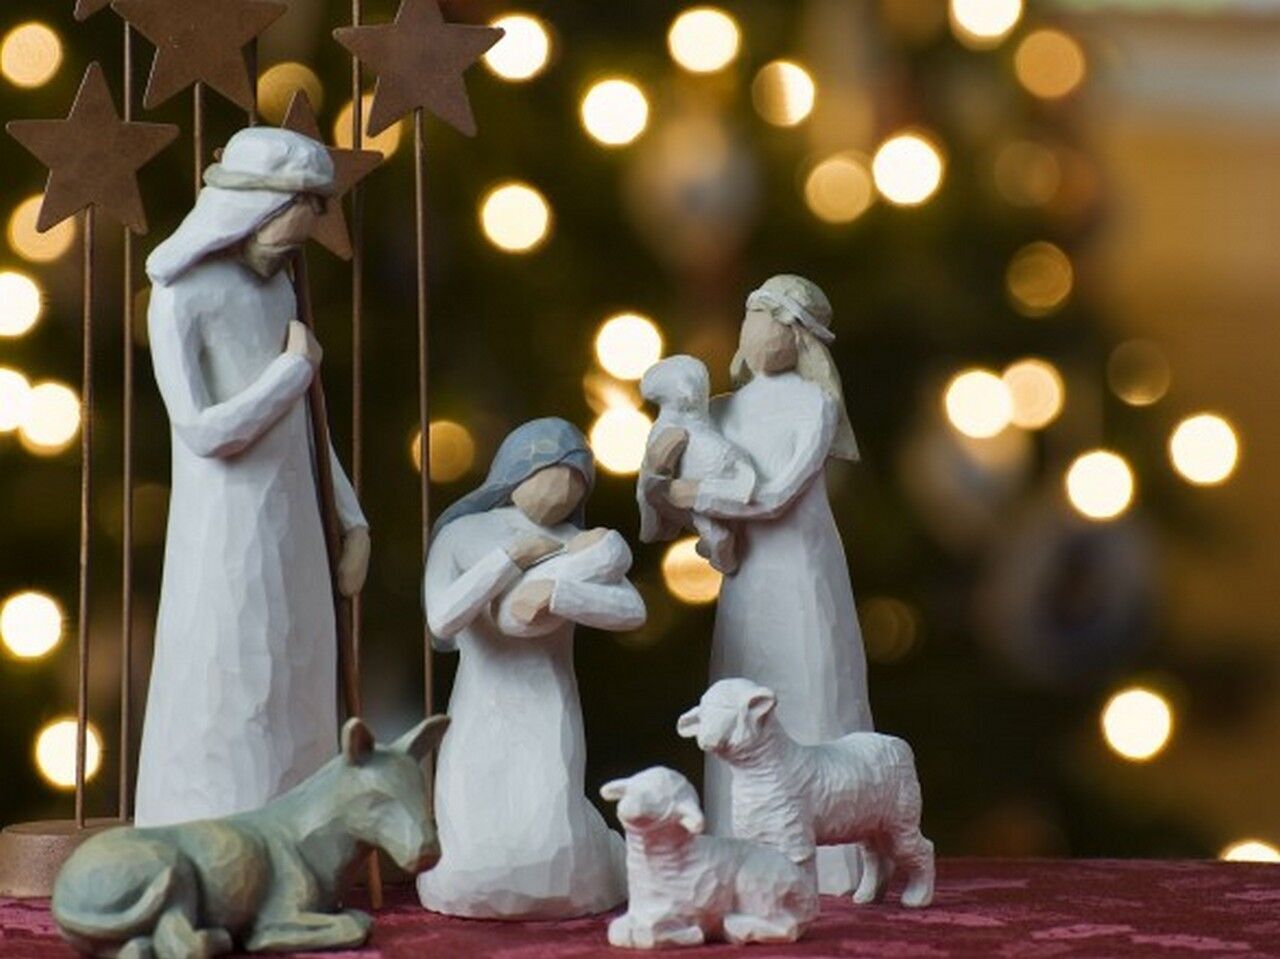 25 декабря Рождество Христово празднуют католики, протестанты, а также православные